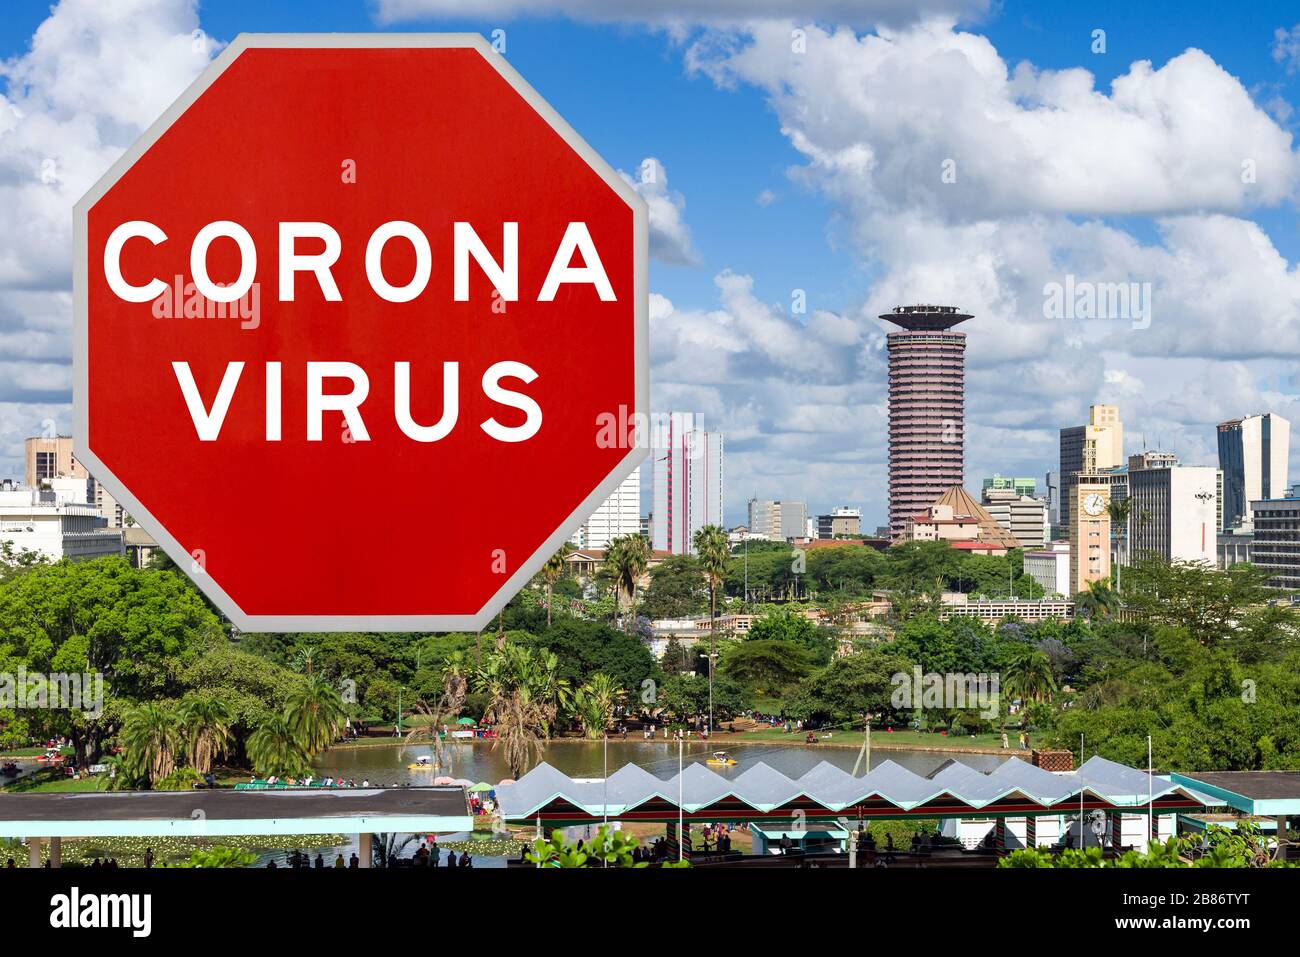 Image conceptuelle du Kenya après les premiers cas signalés de virus Corona / Covid-19 au Kenya, provoquant un blocage du gouvernement dans le pays Banque D'Images